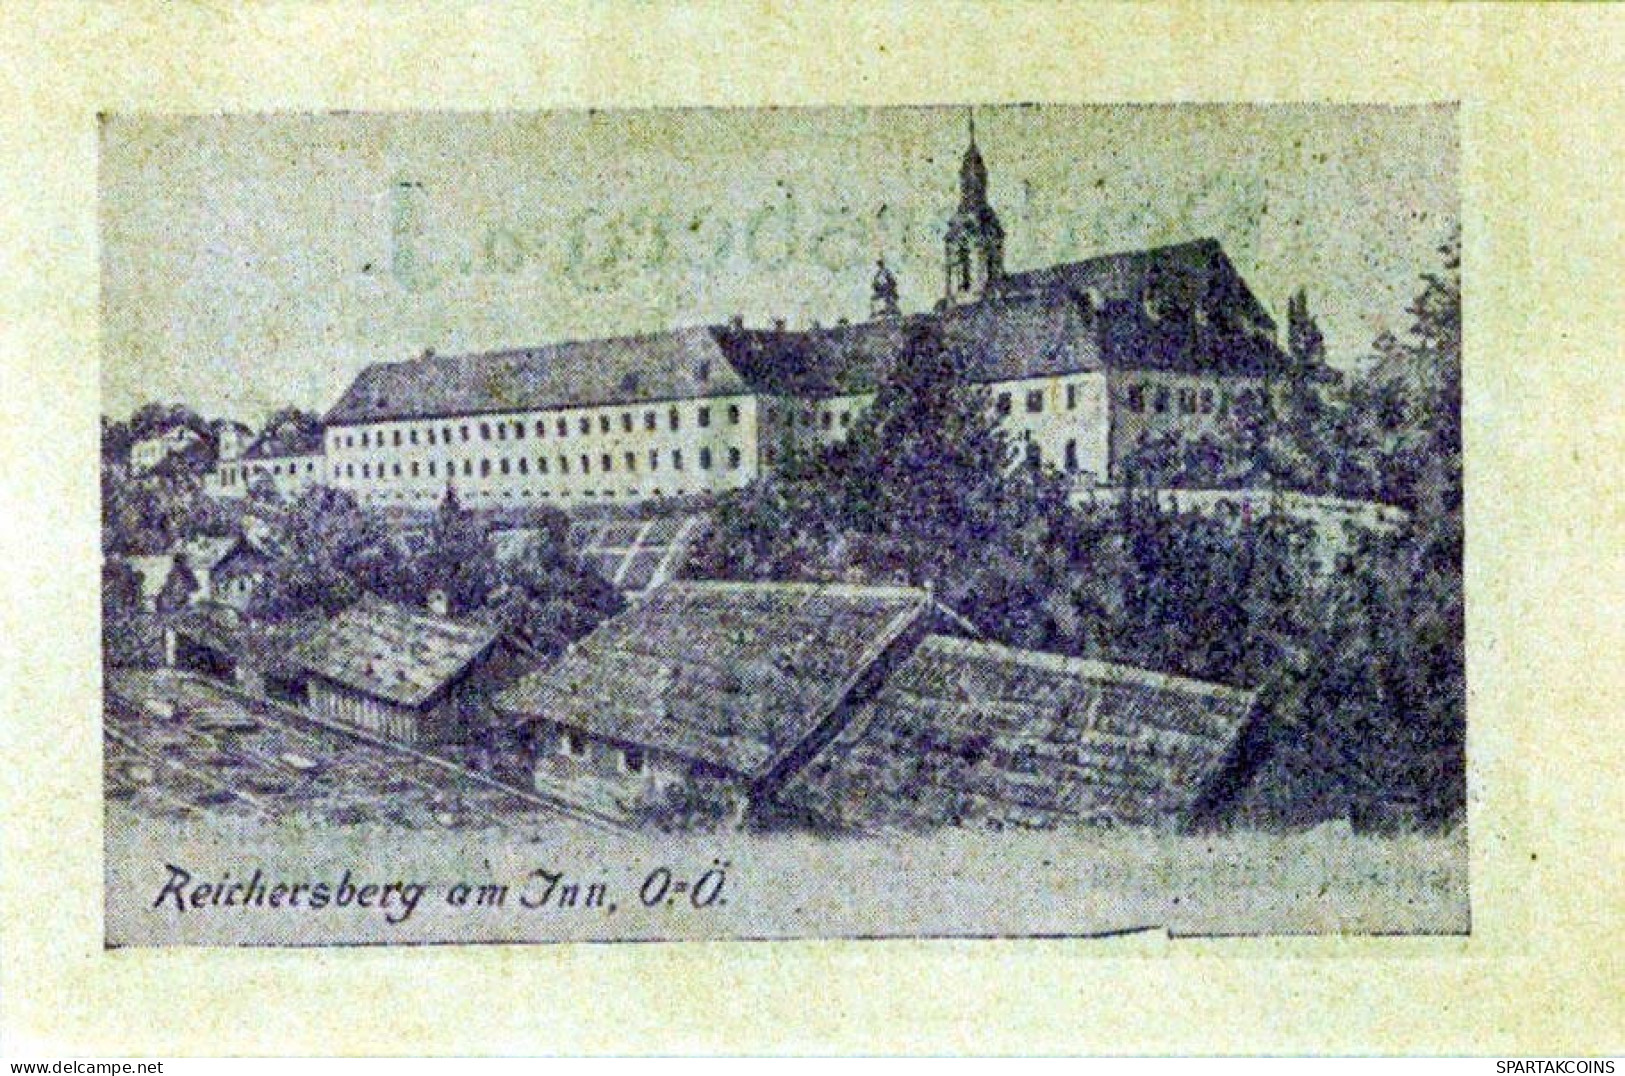 10 HELLER 1920 Stadt REICHERSBERG Oberösterreich Österreich Notgeld #PD951 - Lokale Ausgaben